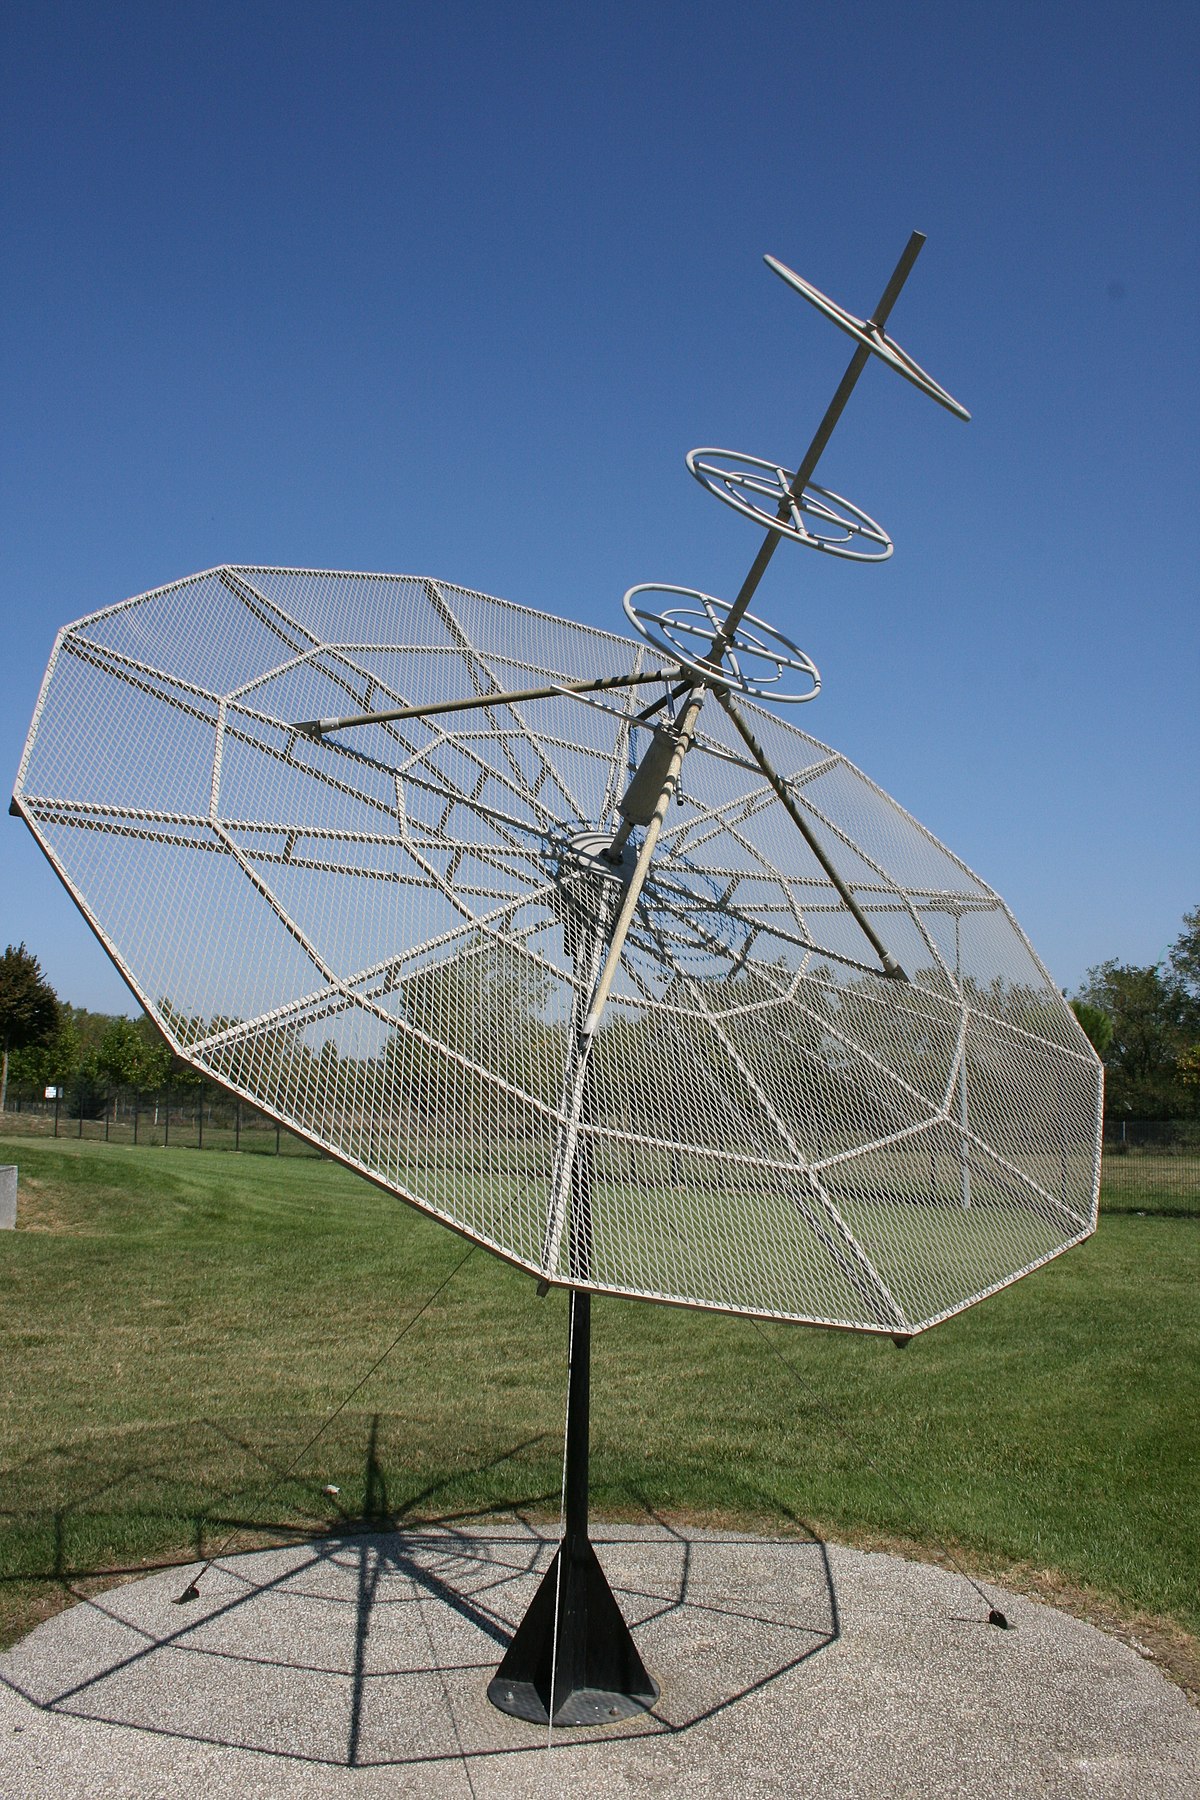 File:Radio antenna, Cite de l'espace.jpg - Wikimedia Commons